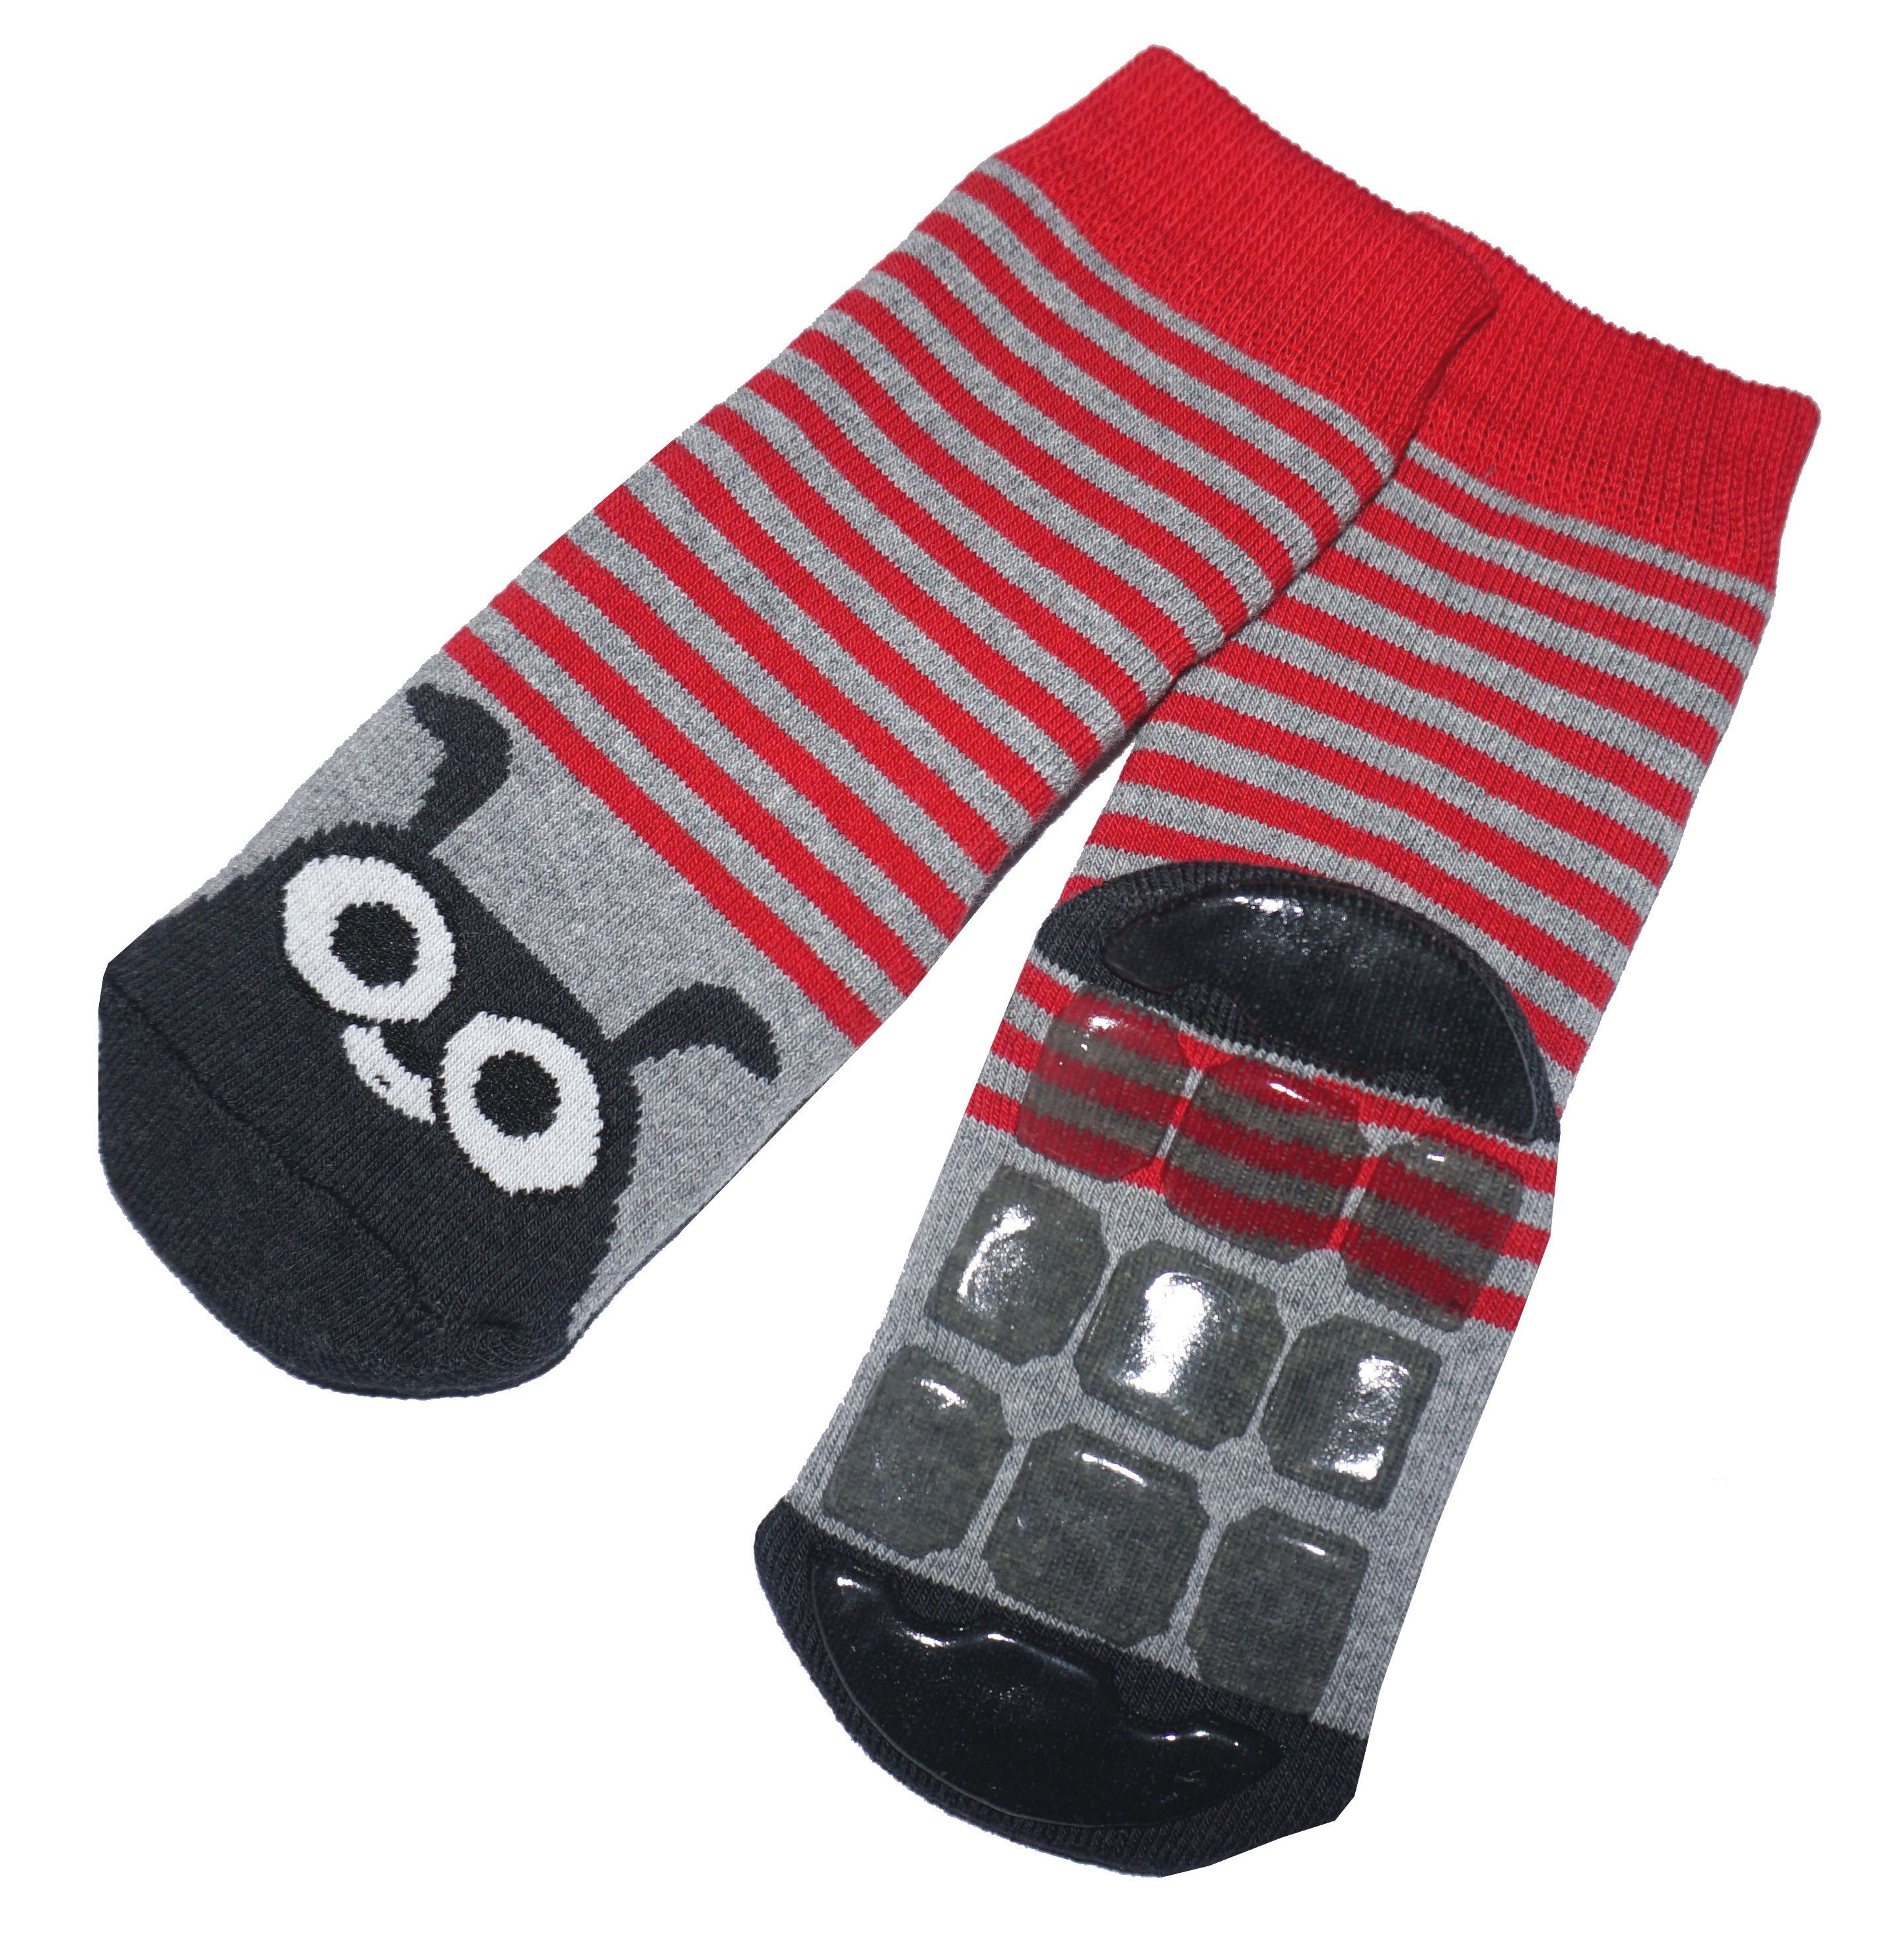 Wäsche/Bademode Socken WERI SPEZIALS Strumpfhersteller GmbH ABS-Socken Kinder ABS-Socken für Mädchen und Jungs Lustiger Hase aus